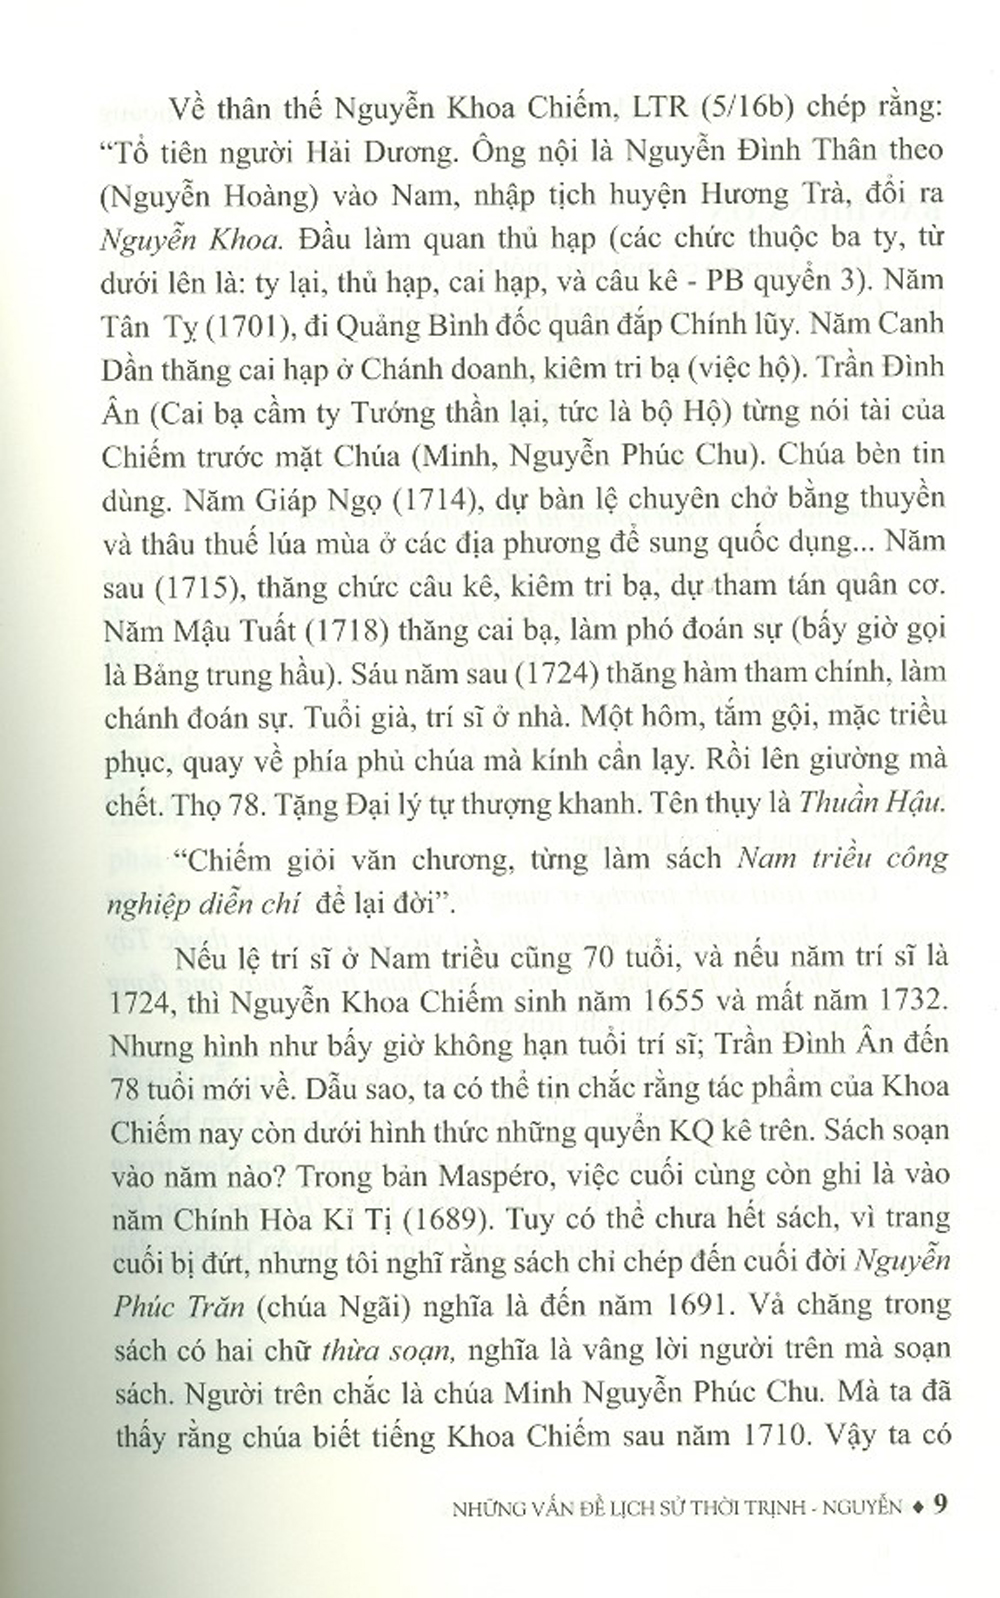 Những Vấn Đề Lịch Sử Thời Trịnh Nguyễn